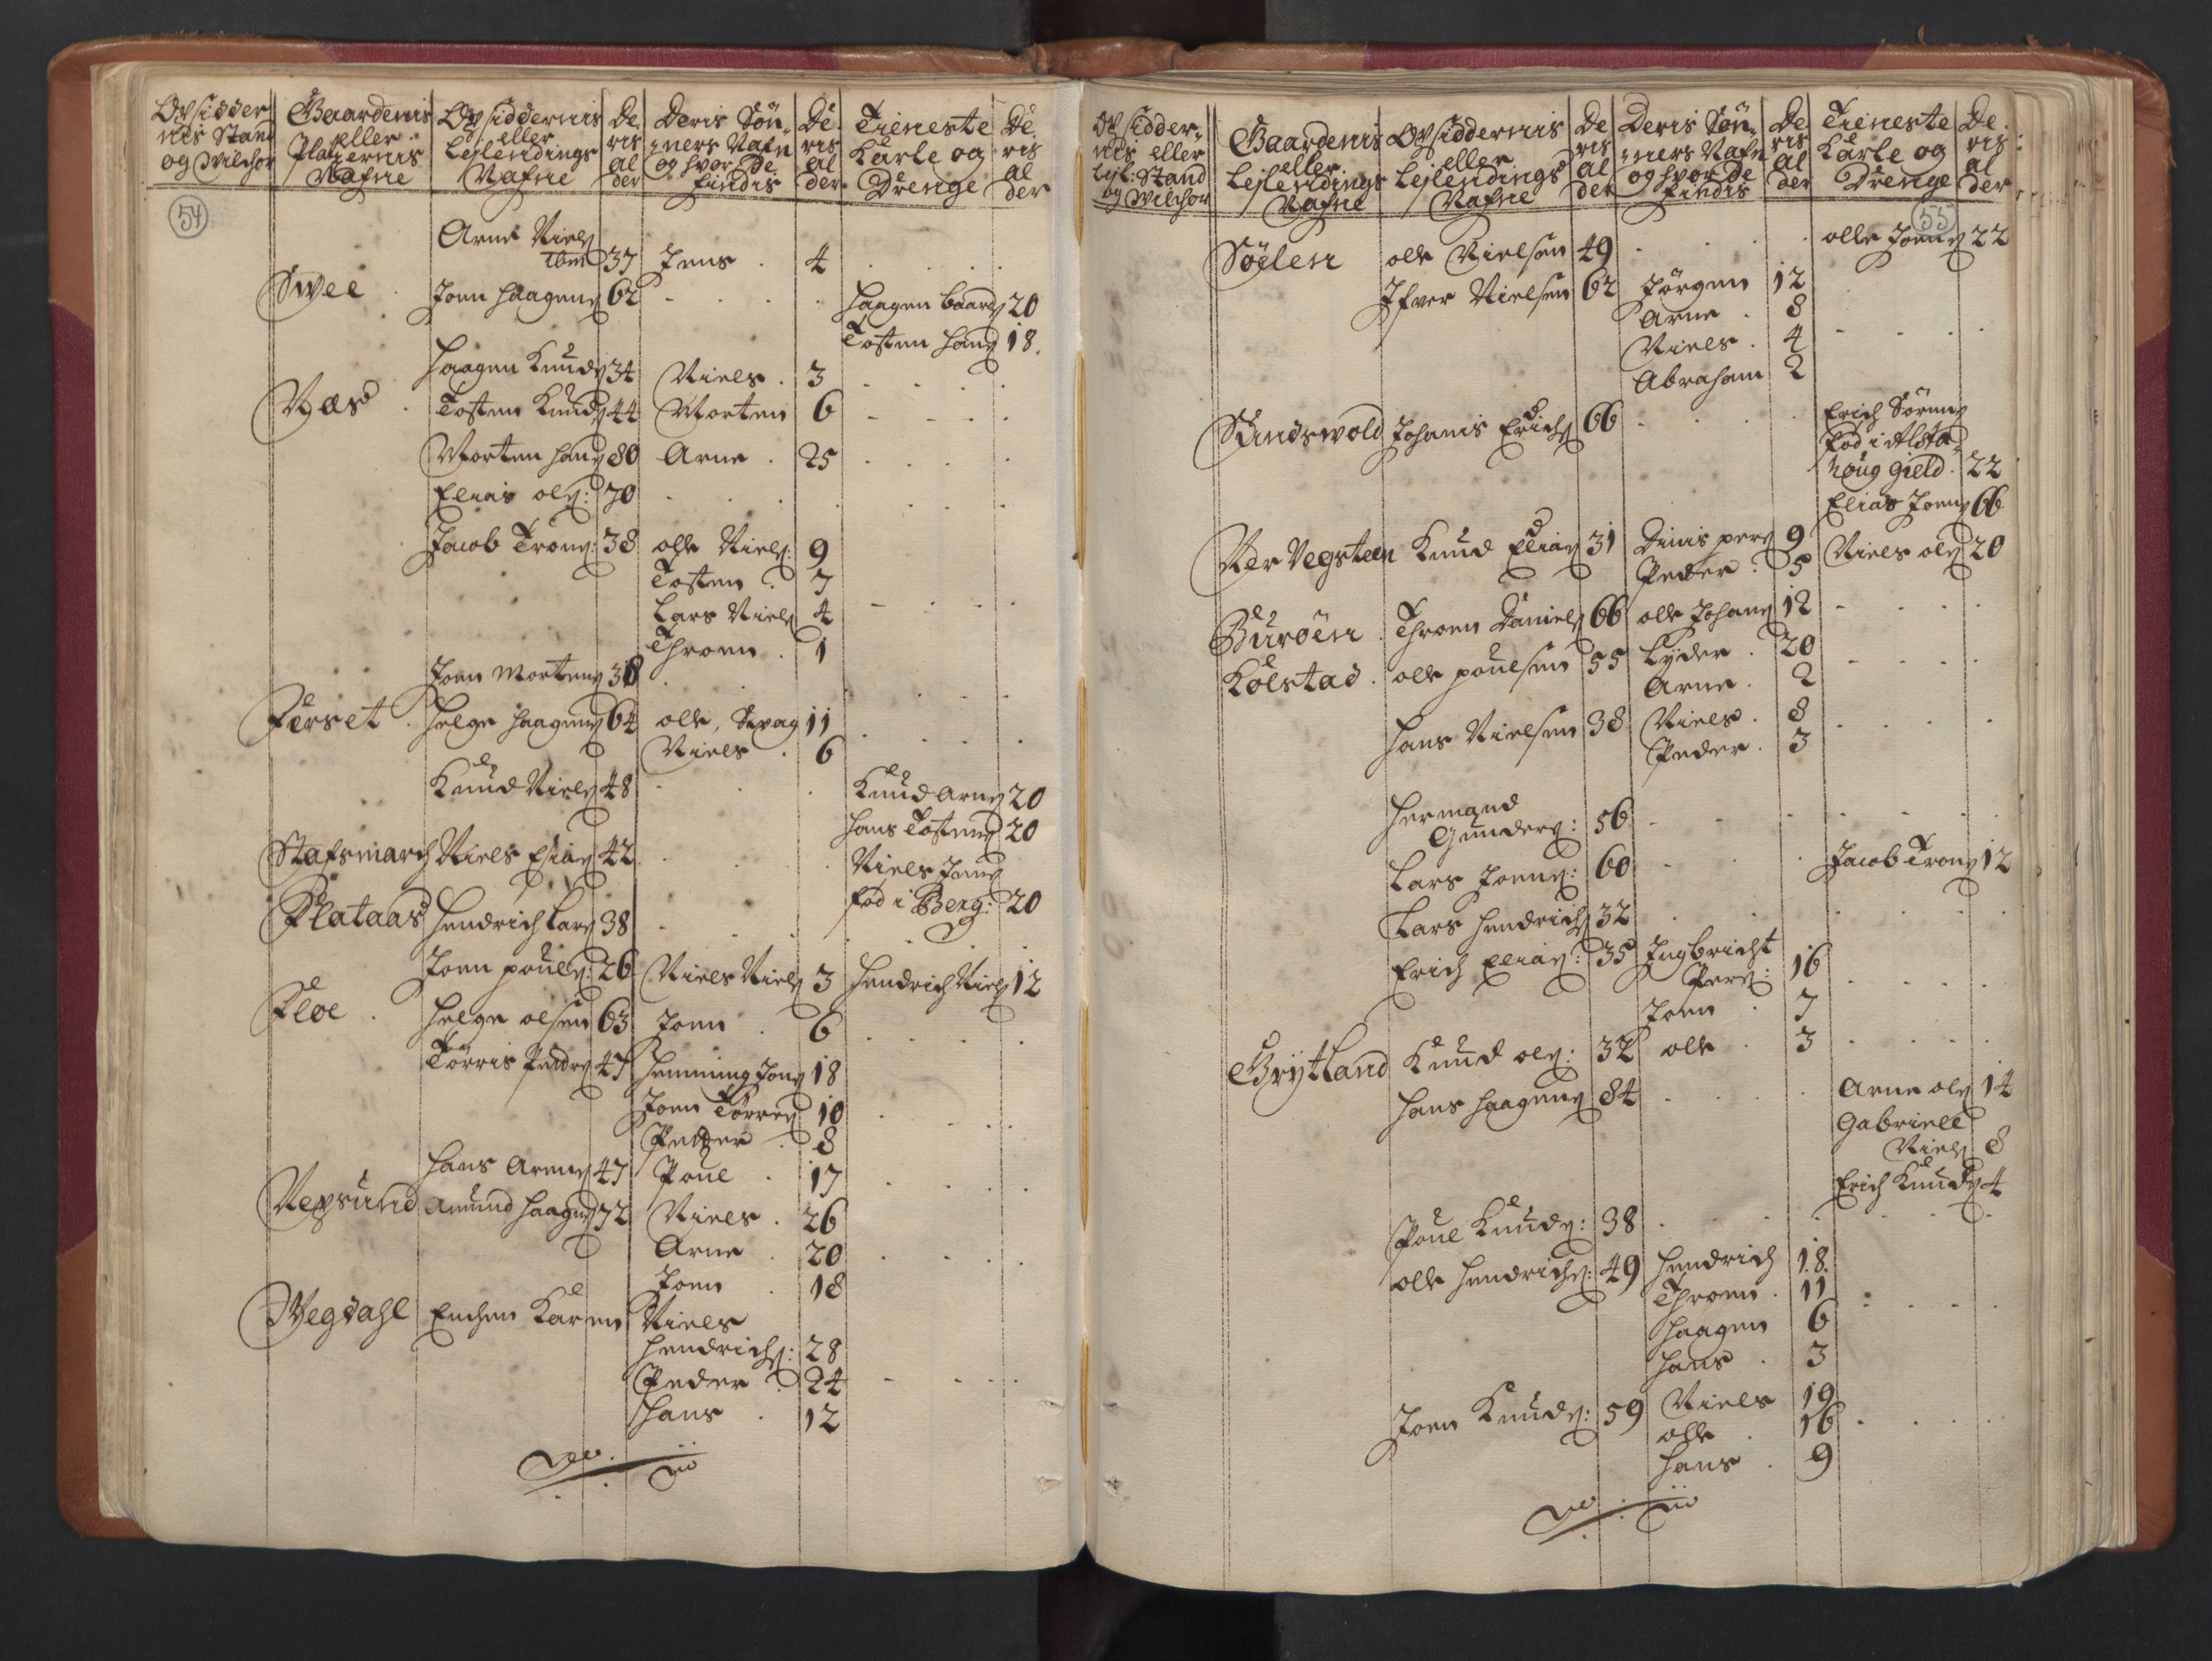 RA, Manntallet 1701, nr. 16: Helgeland fogderi, 1701, s. 54-55